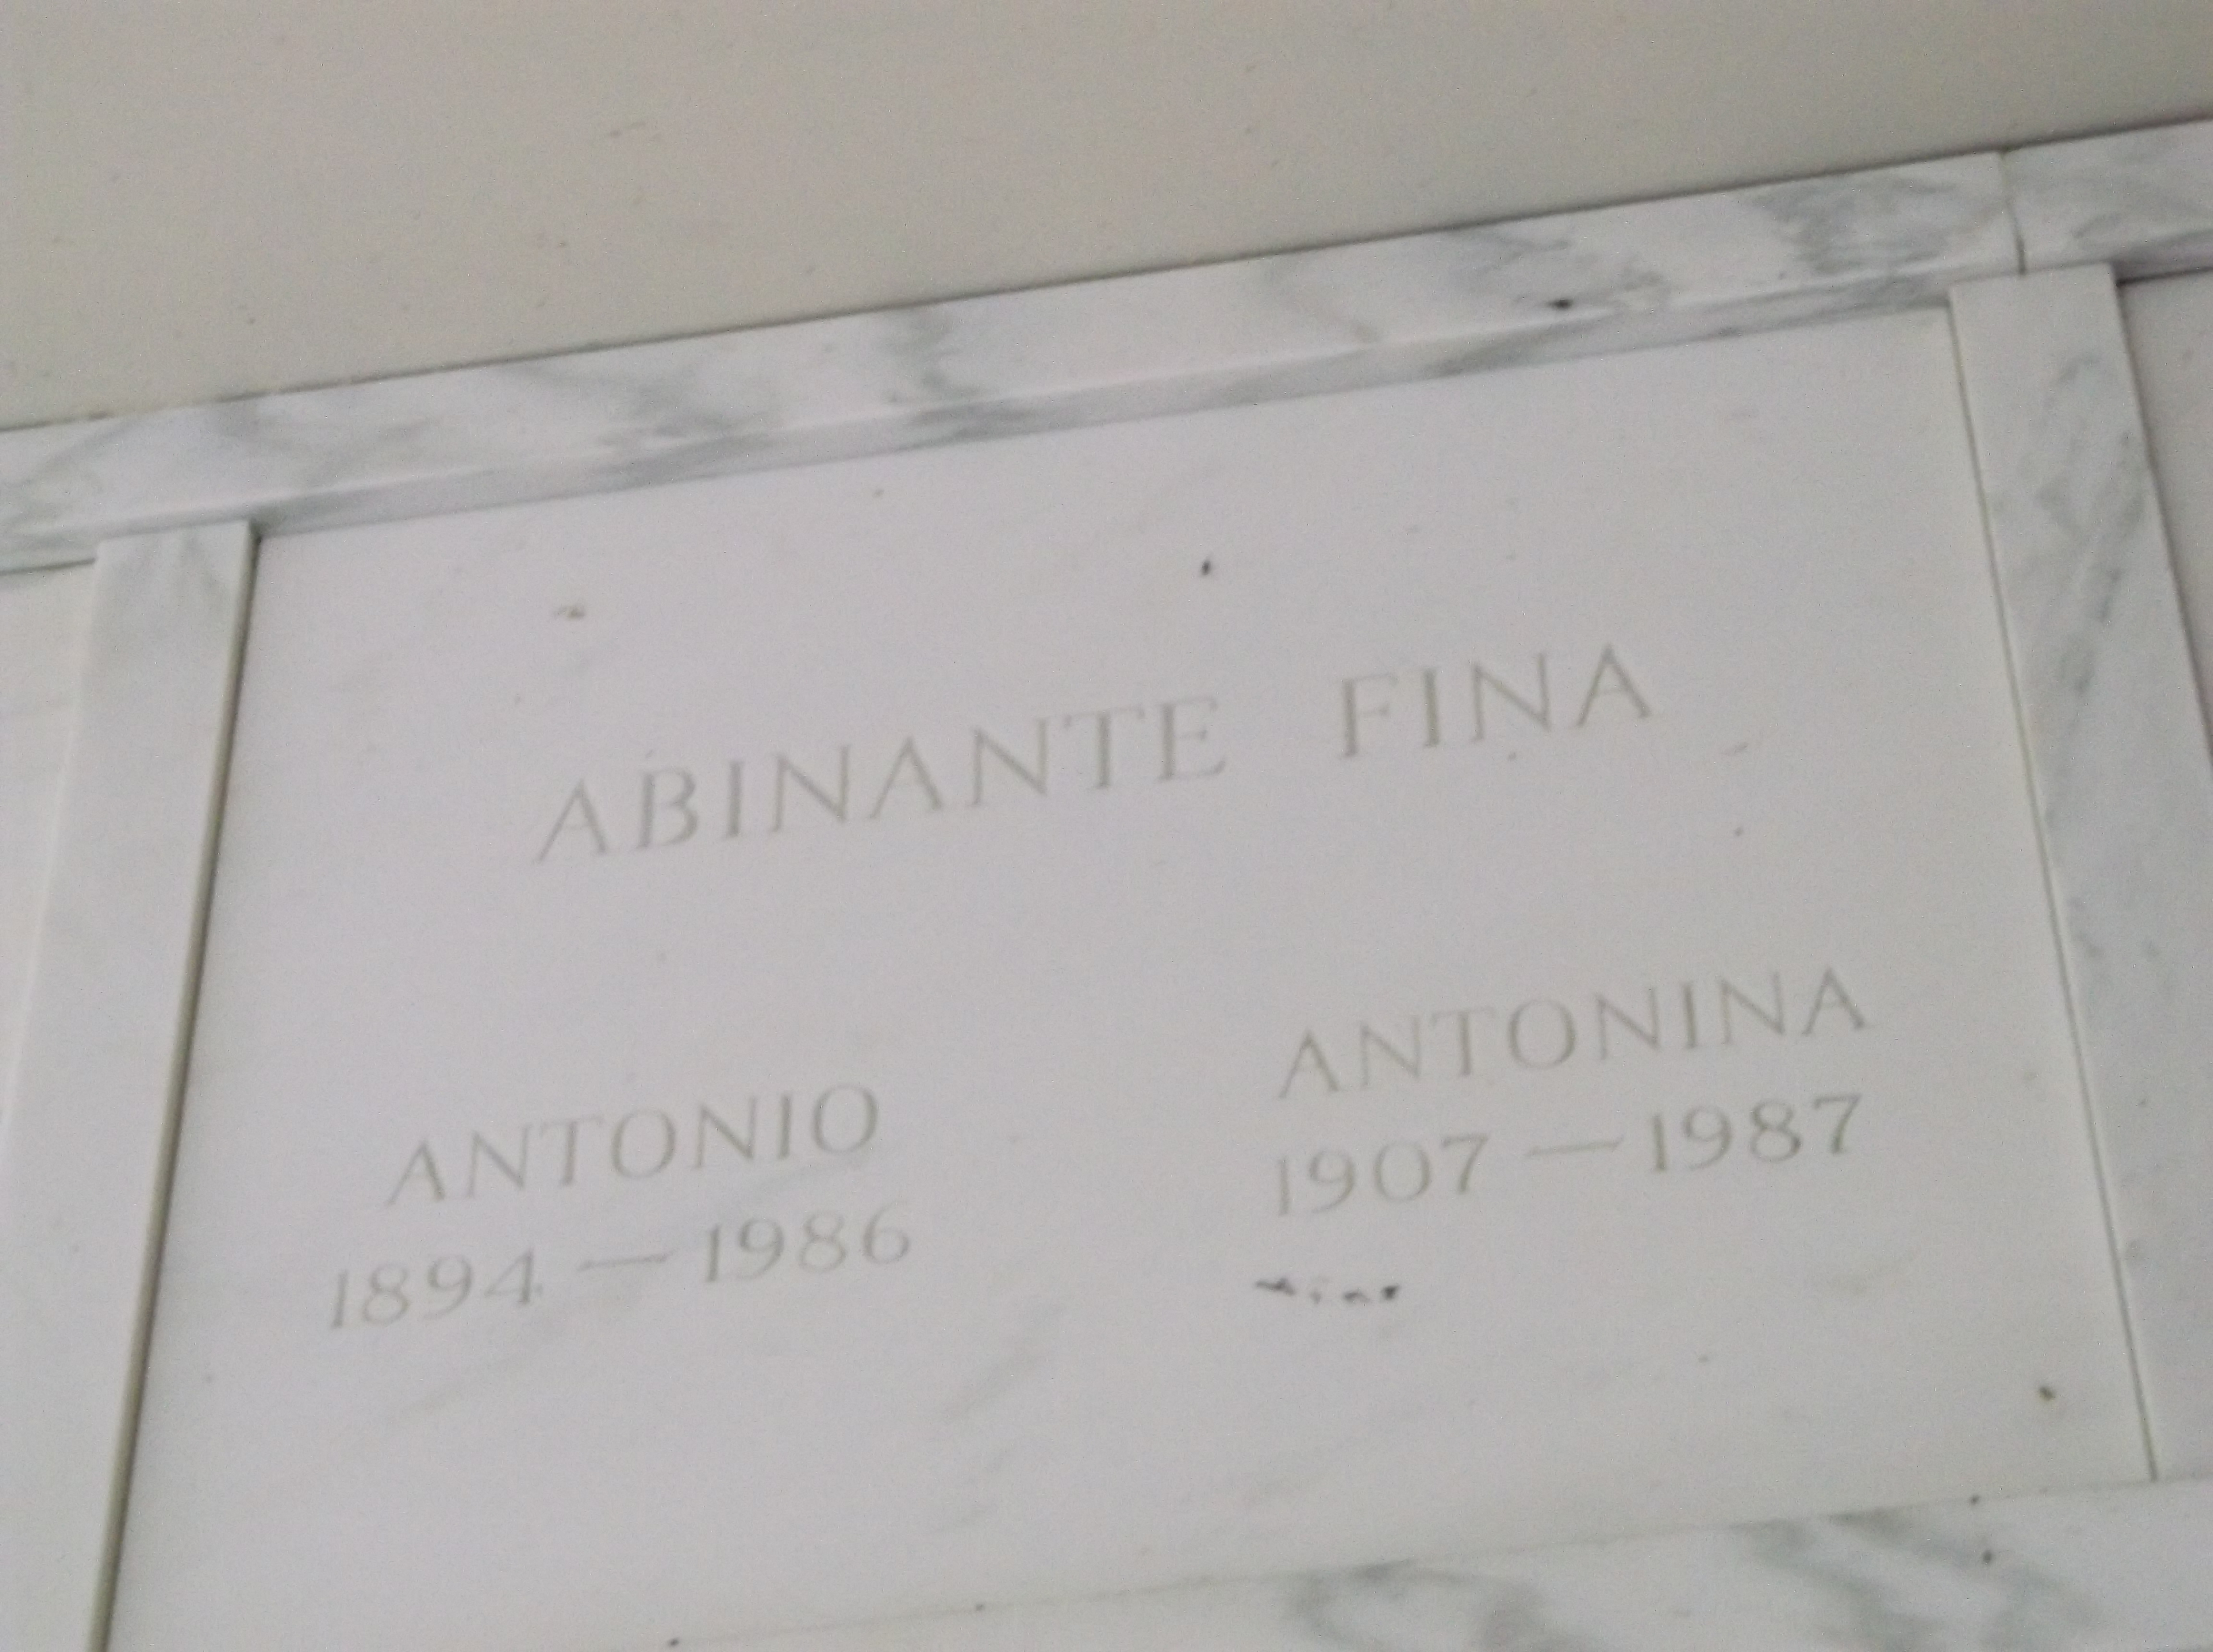 Antonina Abinante Fina